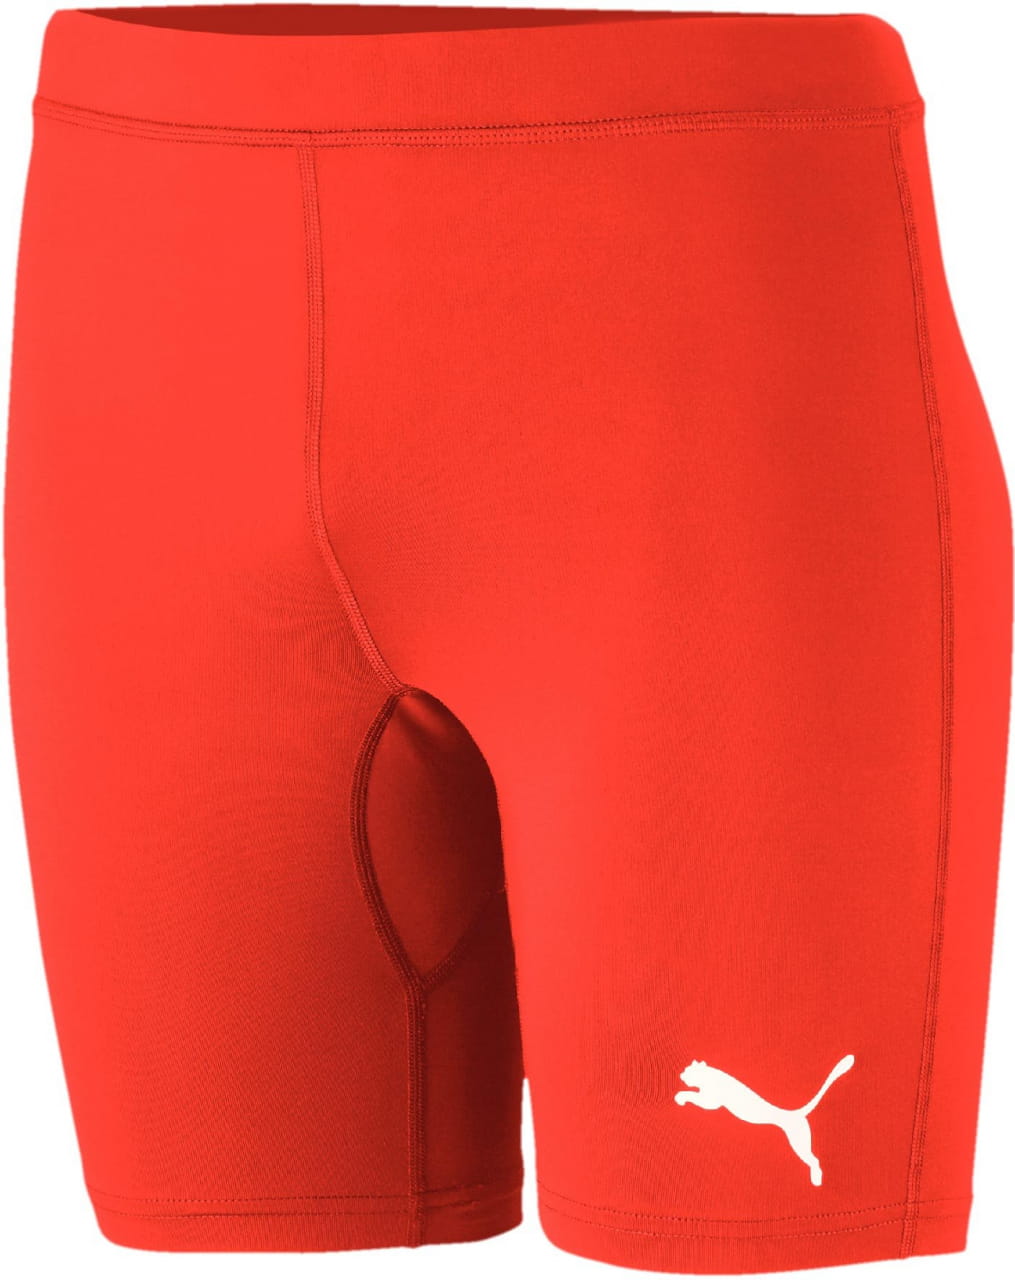 Pánské sportovní kalhoty Puma LIGA Baselayer Short Tight